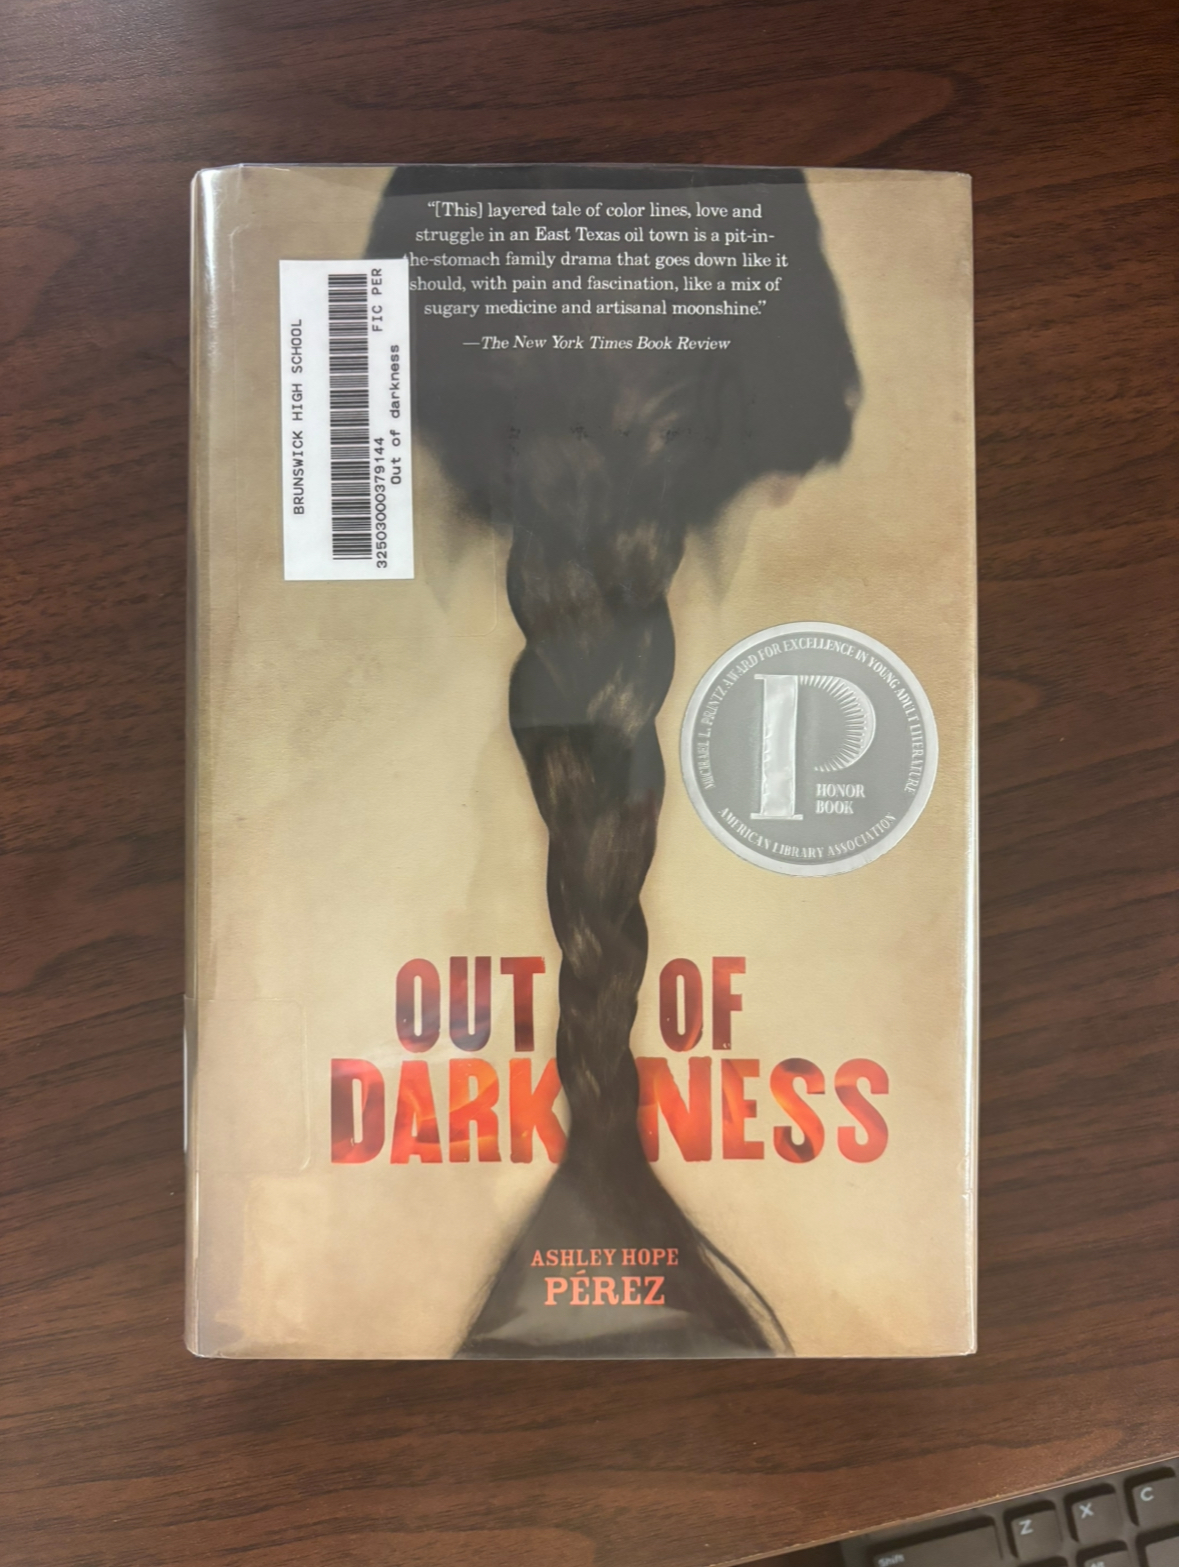 Out of Darkness by Ashley Hope Pérez.